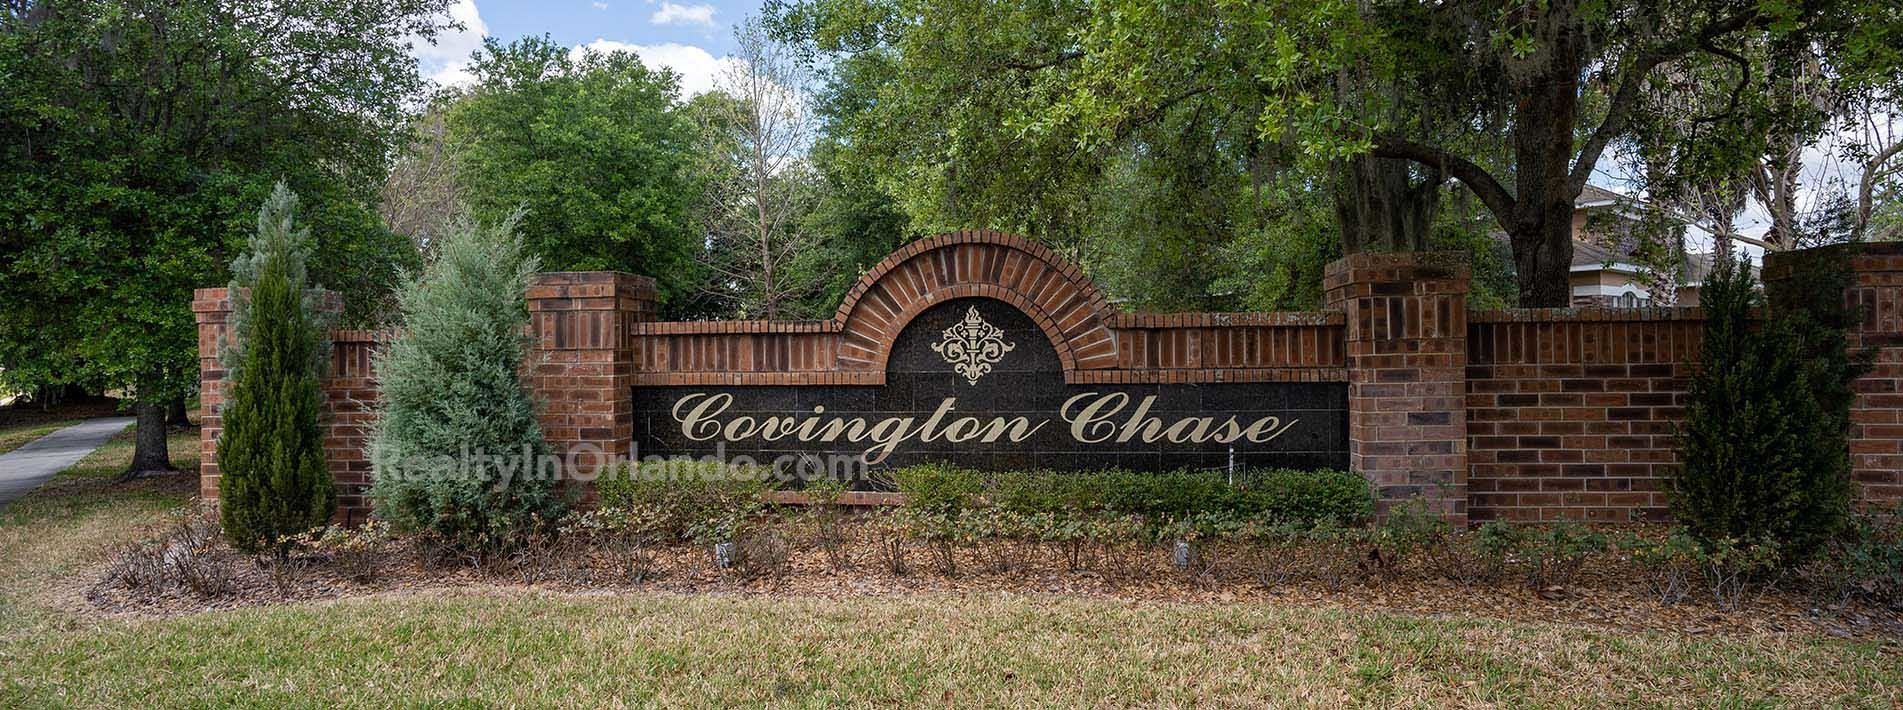 Convington Chase Winter Garden Homes for Sale